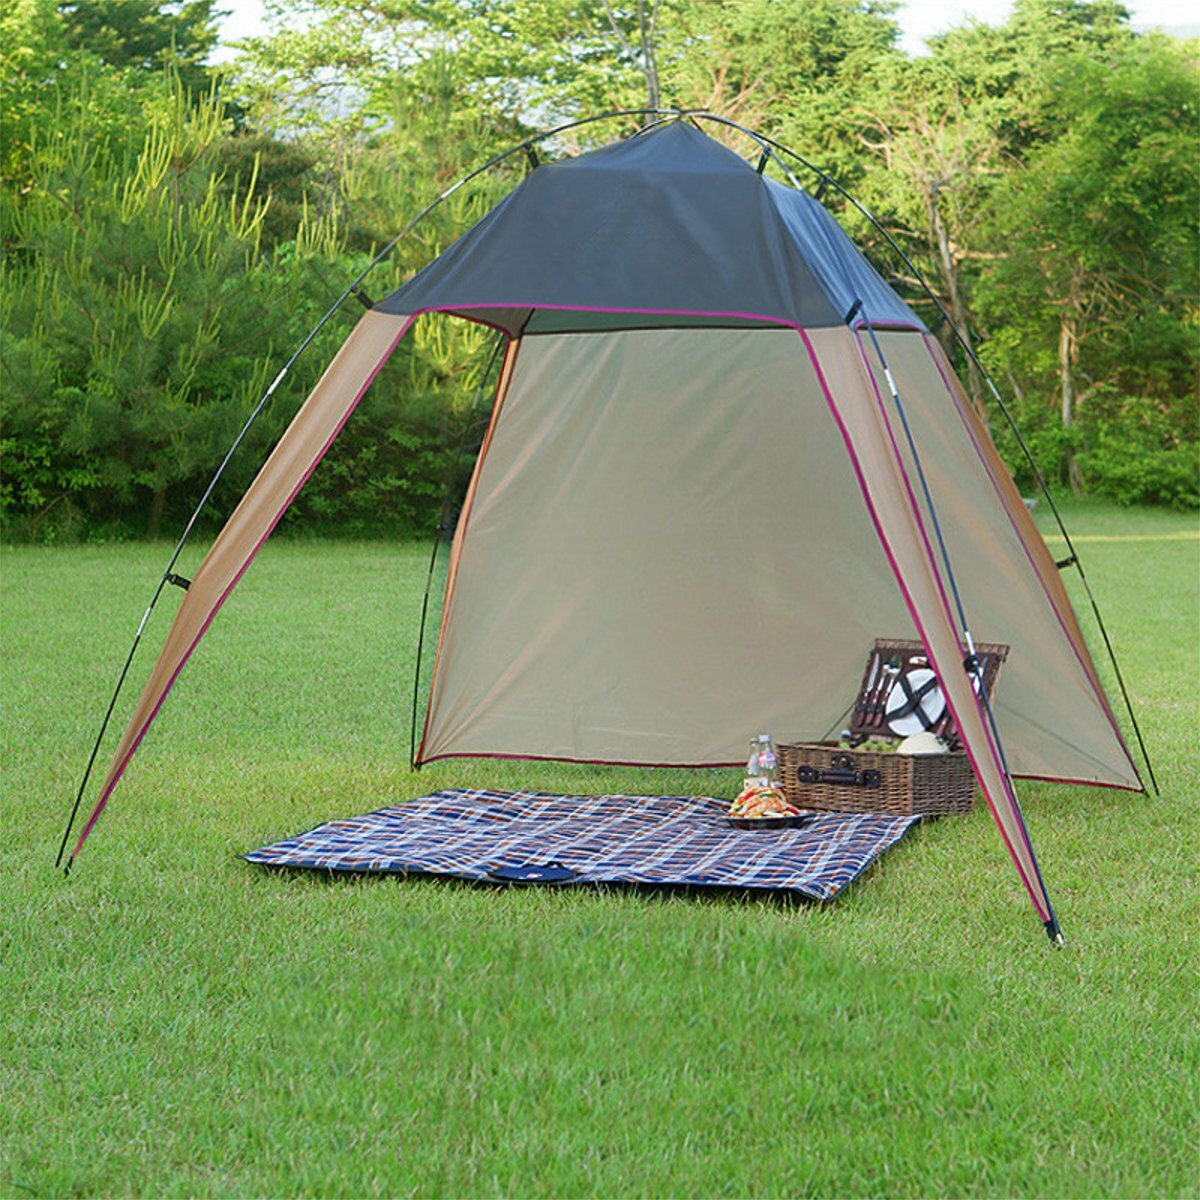 Легкий палаточный тент для открытого воздуха, ветрозащитный тент большого размера для кемпинга, пикника и пляжа.